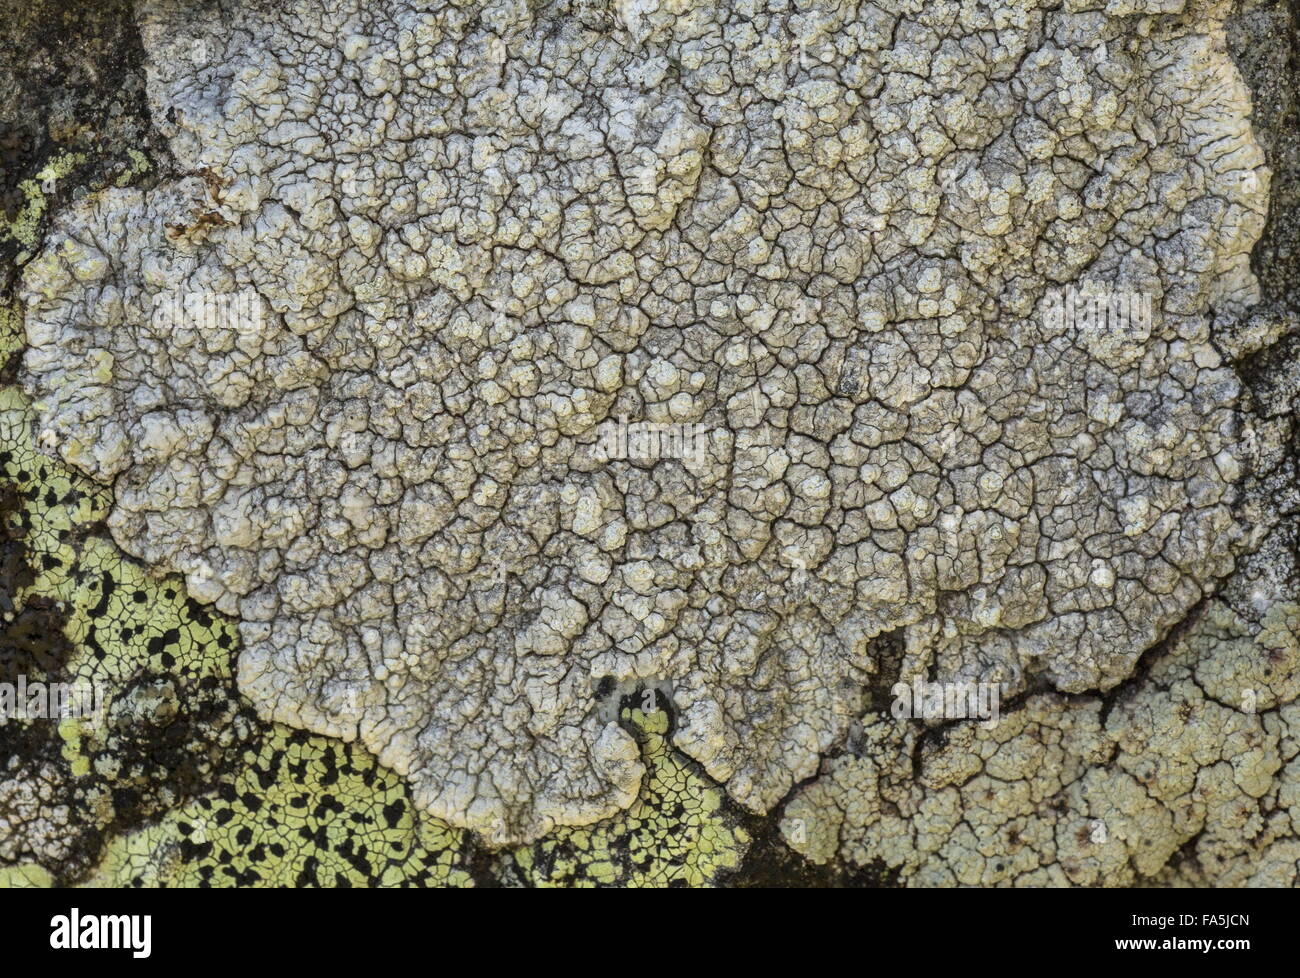 A crustose lichen, Pertusaria lactea, in the Italian Alps. Stock Photo